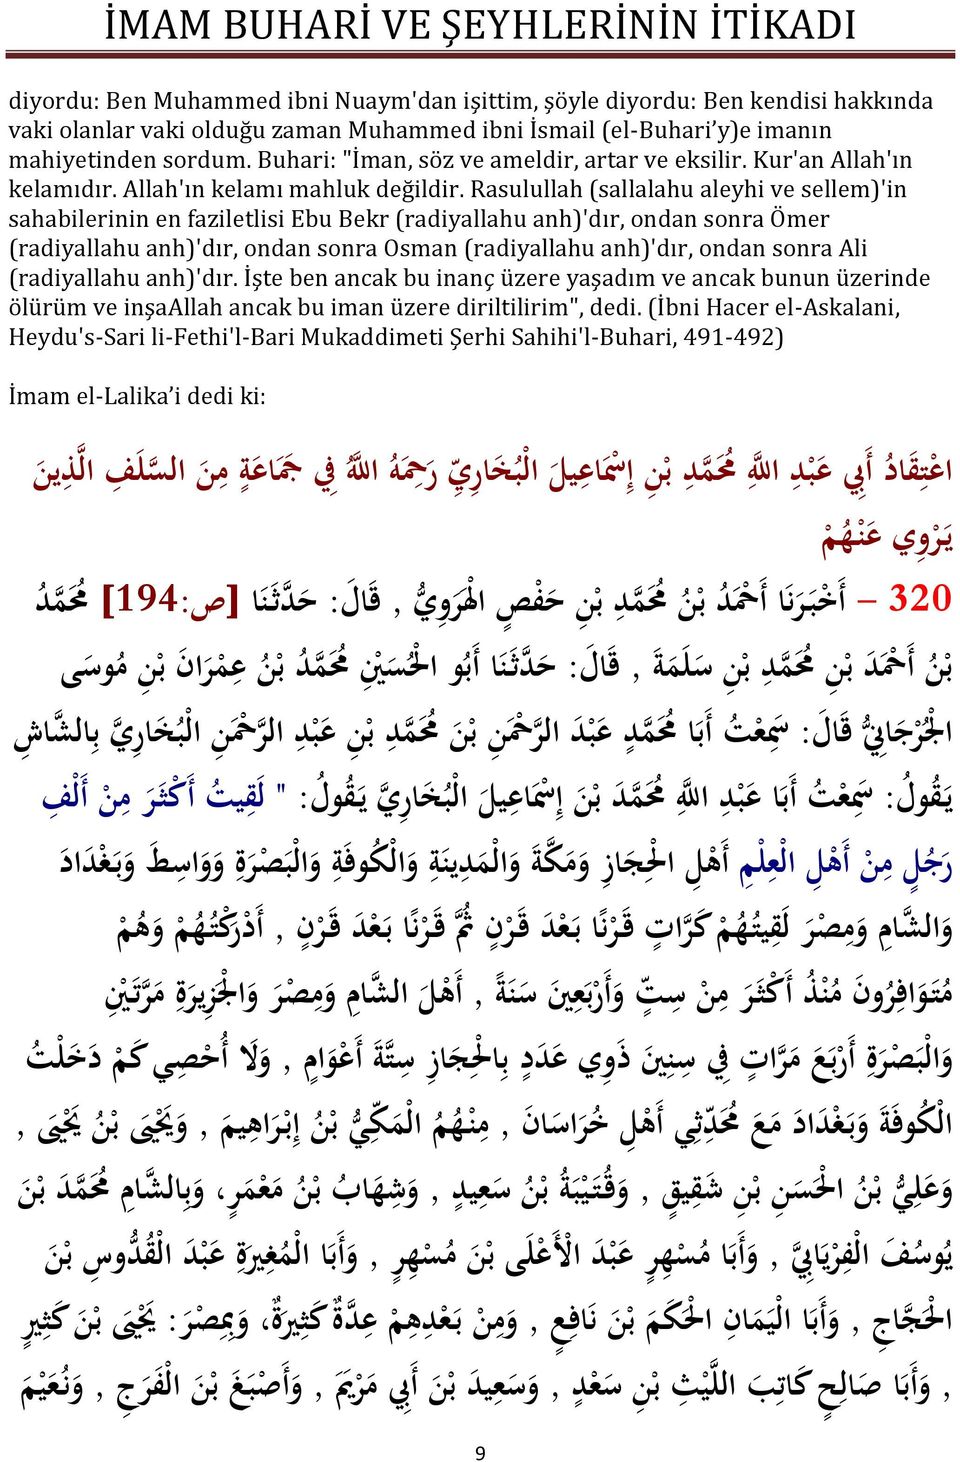 Rasulullah (sallalahu aleyhi ve sellem)'in sahabilerinin en faziletlisi Ebu Bekr (radiyallahu anh)'dır, ondan sonra Ömer (radiyallahu anh)'dır, ondan sonra Osman (radiyallahu anh)'dır, ondan sonra